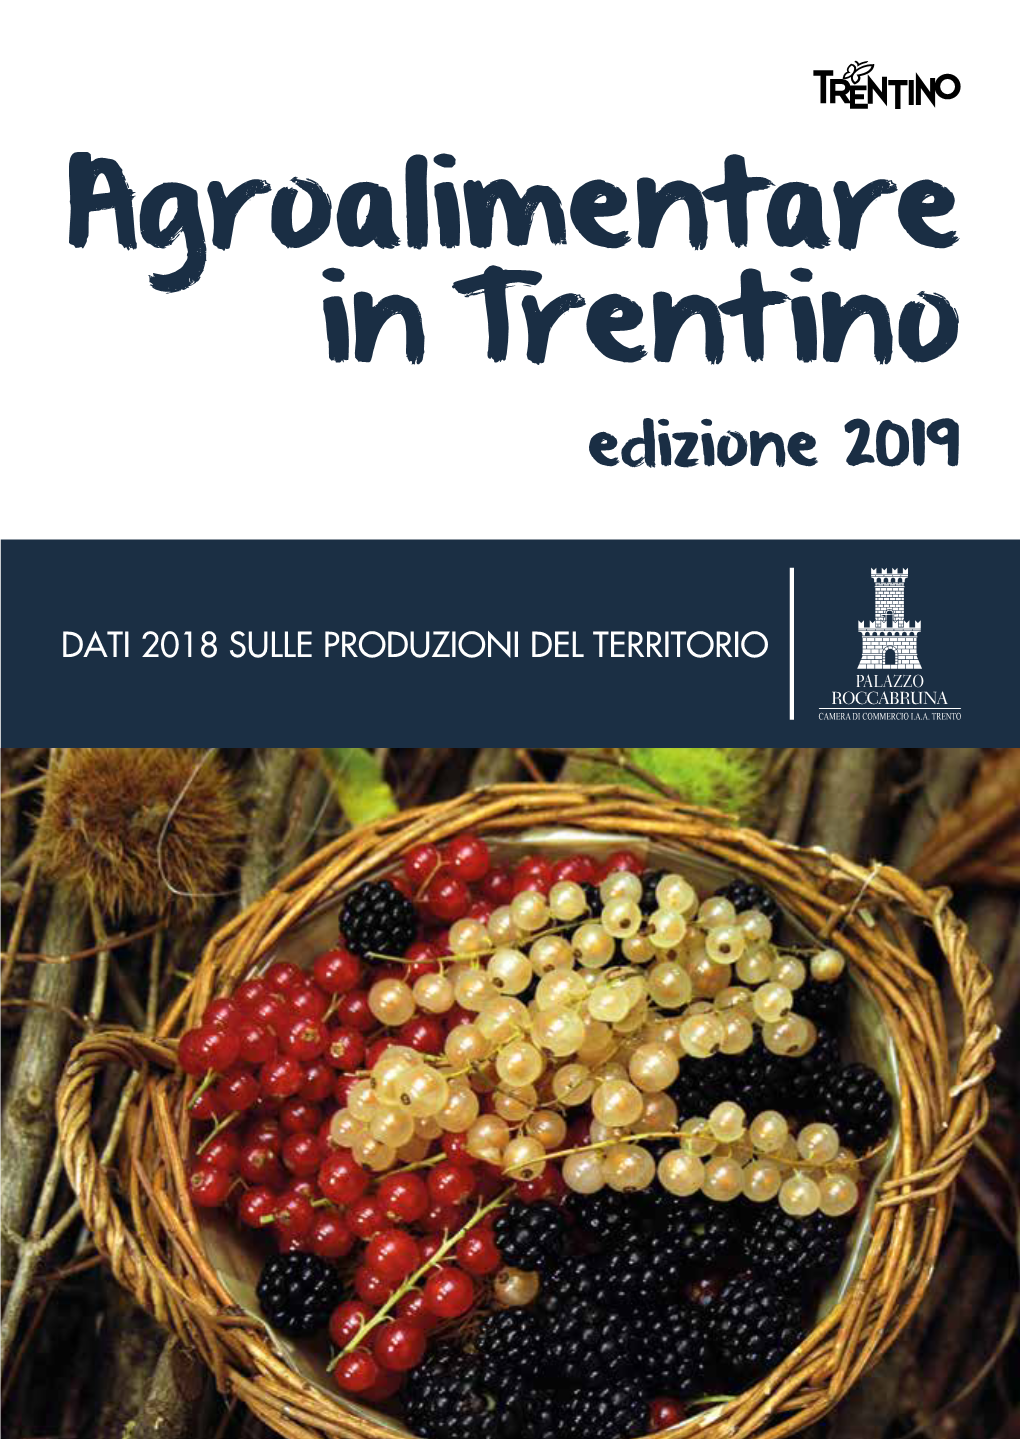 Agroalimentare in Trentino Edizione 2019